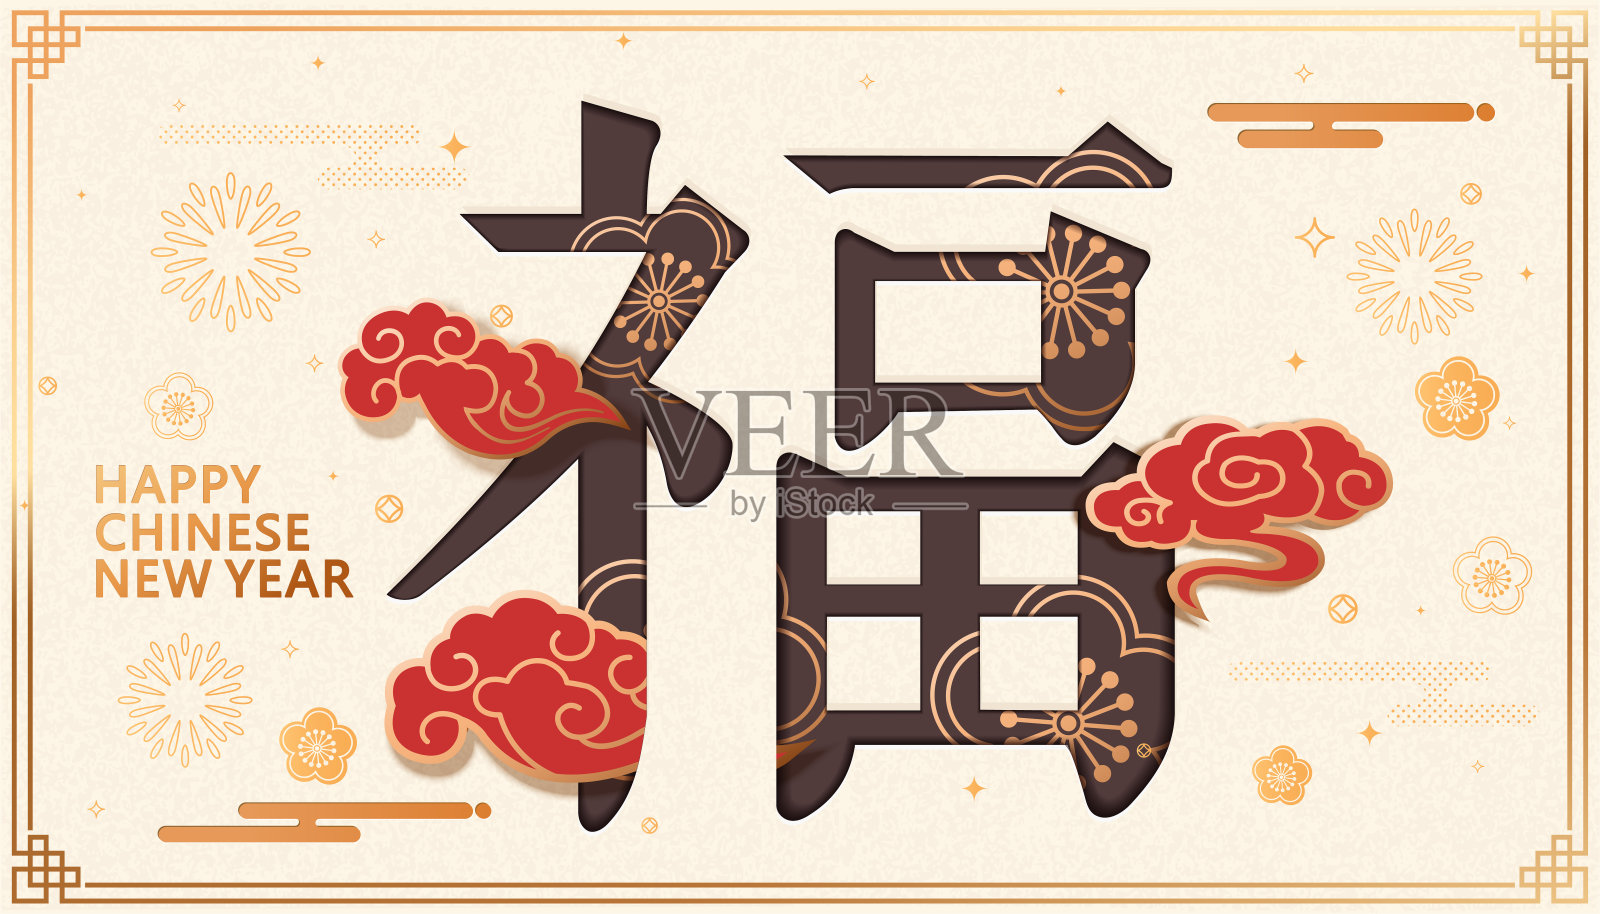 福字设计，中国新年贺卡和海报。吉祥云模式。农历旗帜与在纸艺术风格设计模板素材